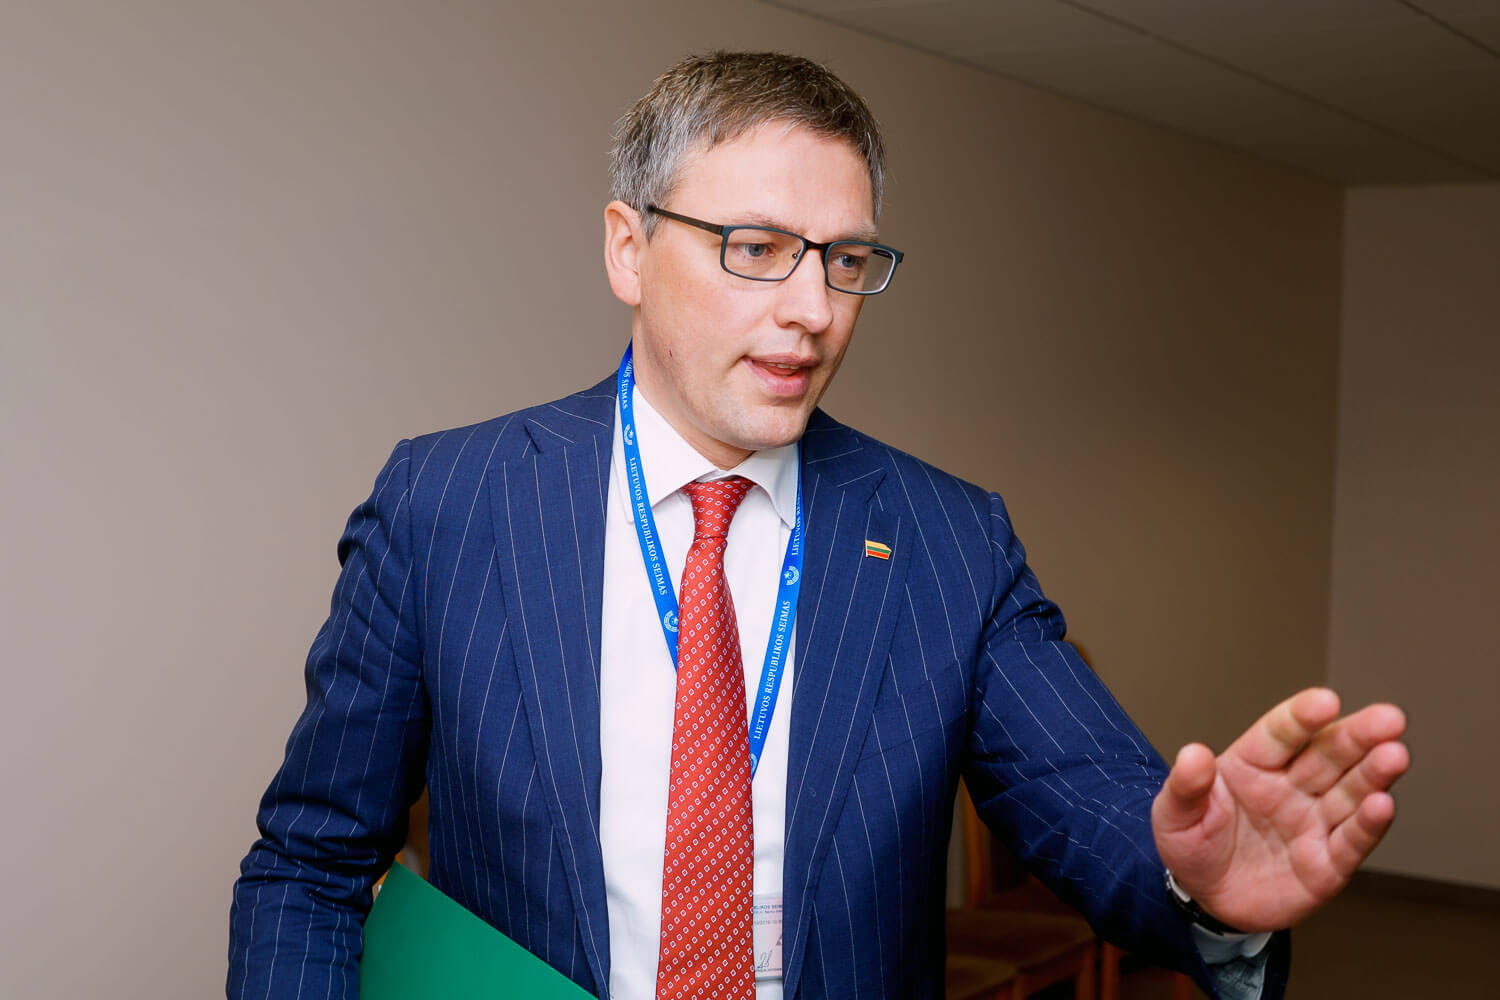 Tyrime dėl neleistinos įtakos politiniams procesams valstybėje figūruoja penkios–šešios grupės, sako NSGK vadovas Vytautas Bakas.